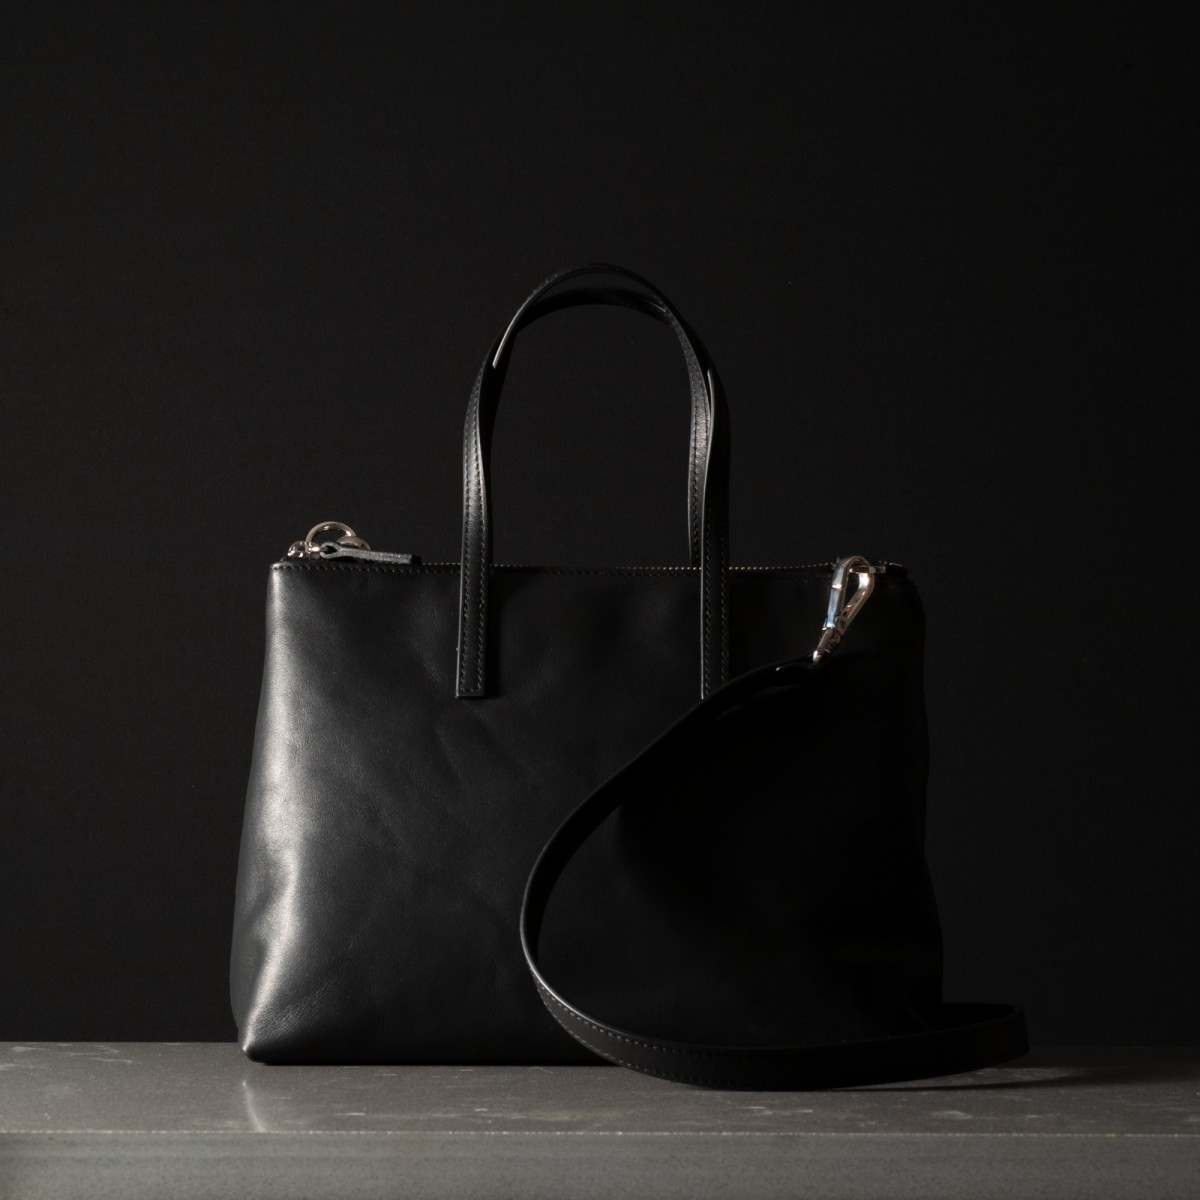 DIVA - Calfskin leather bag, handmade in Italy